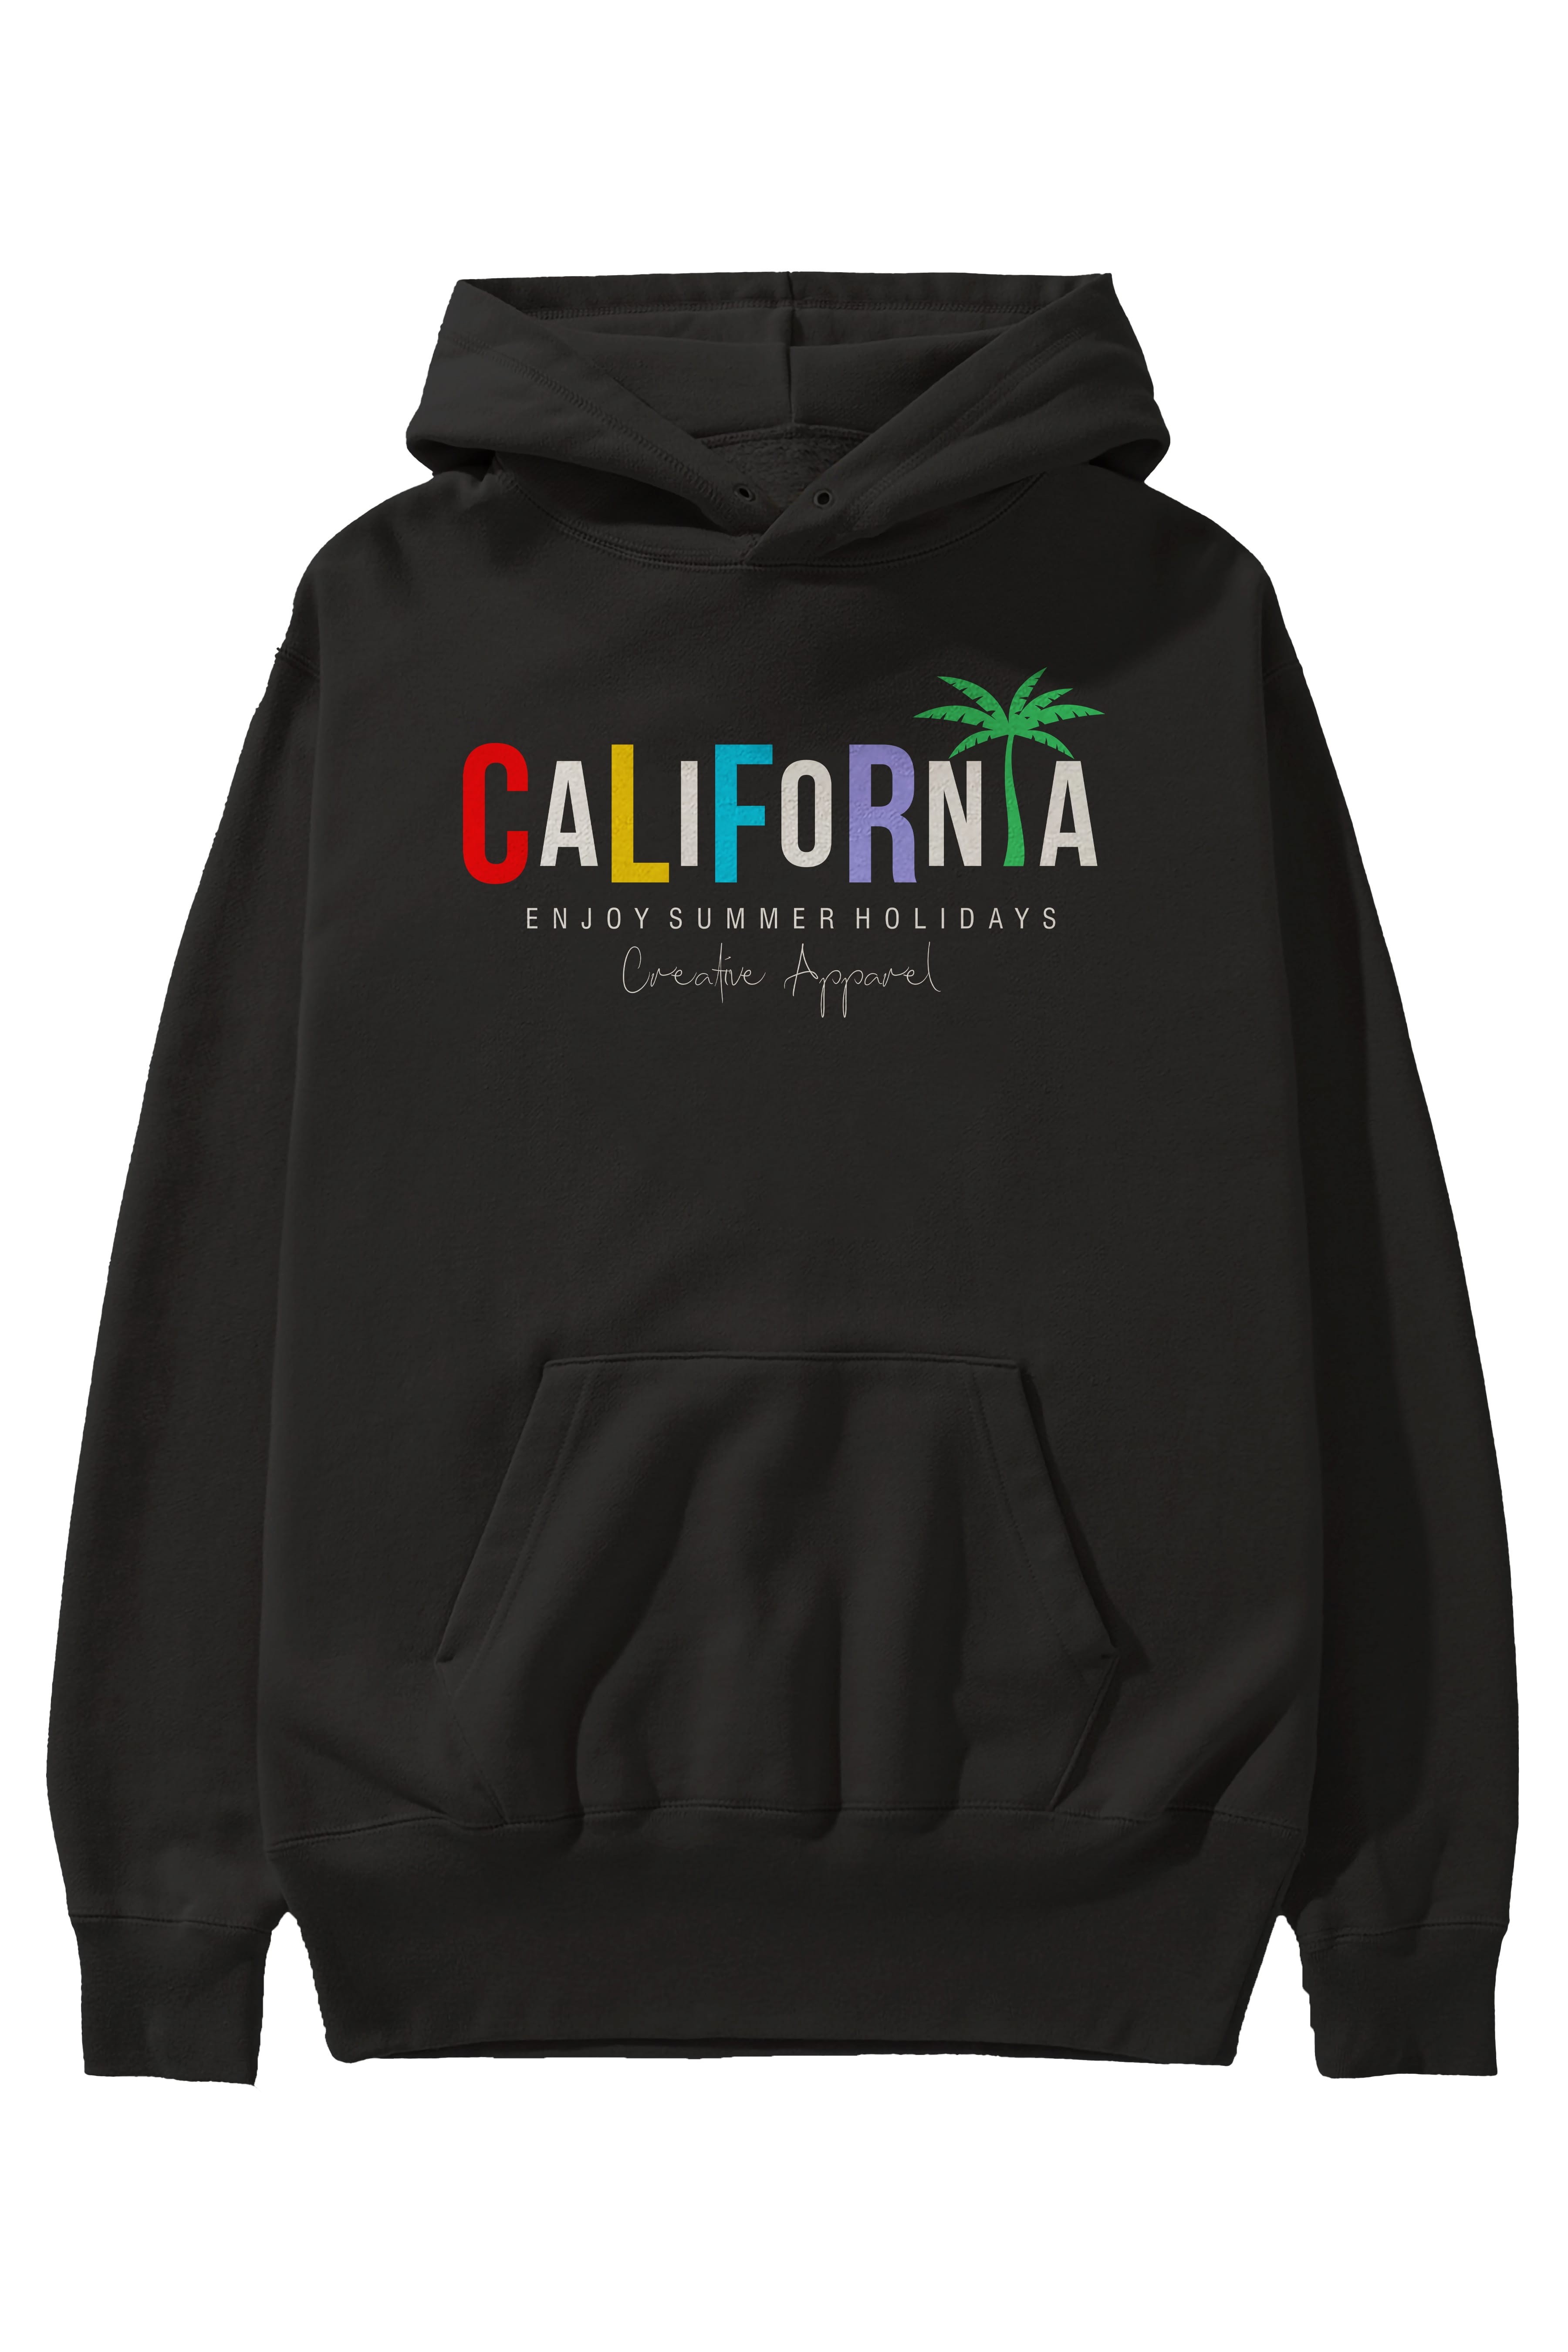 California 2 Ön Baskılı Oversize Hoodie Kapüşonlu Sweatshirt Erkek Kadın Unisex